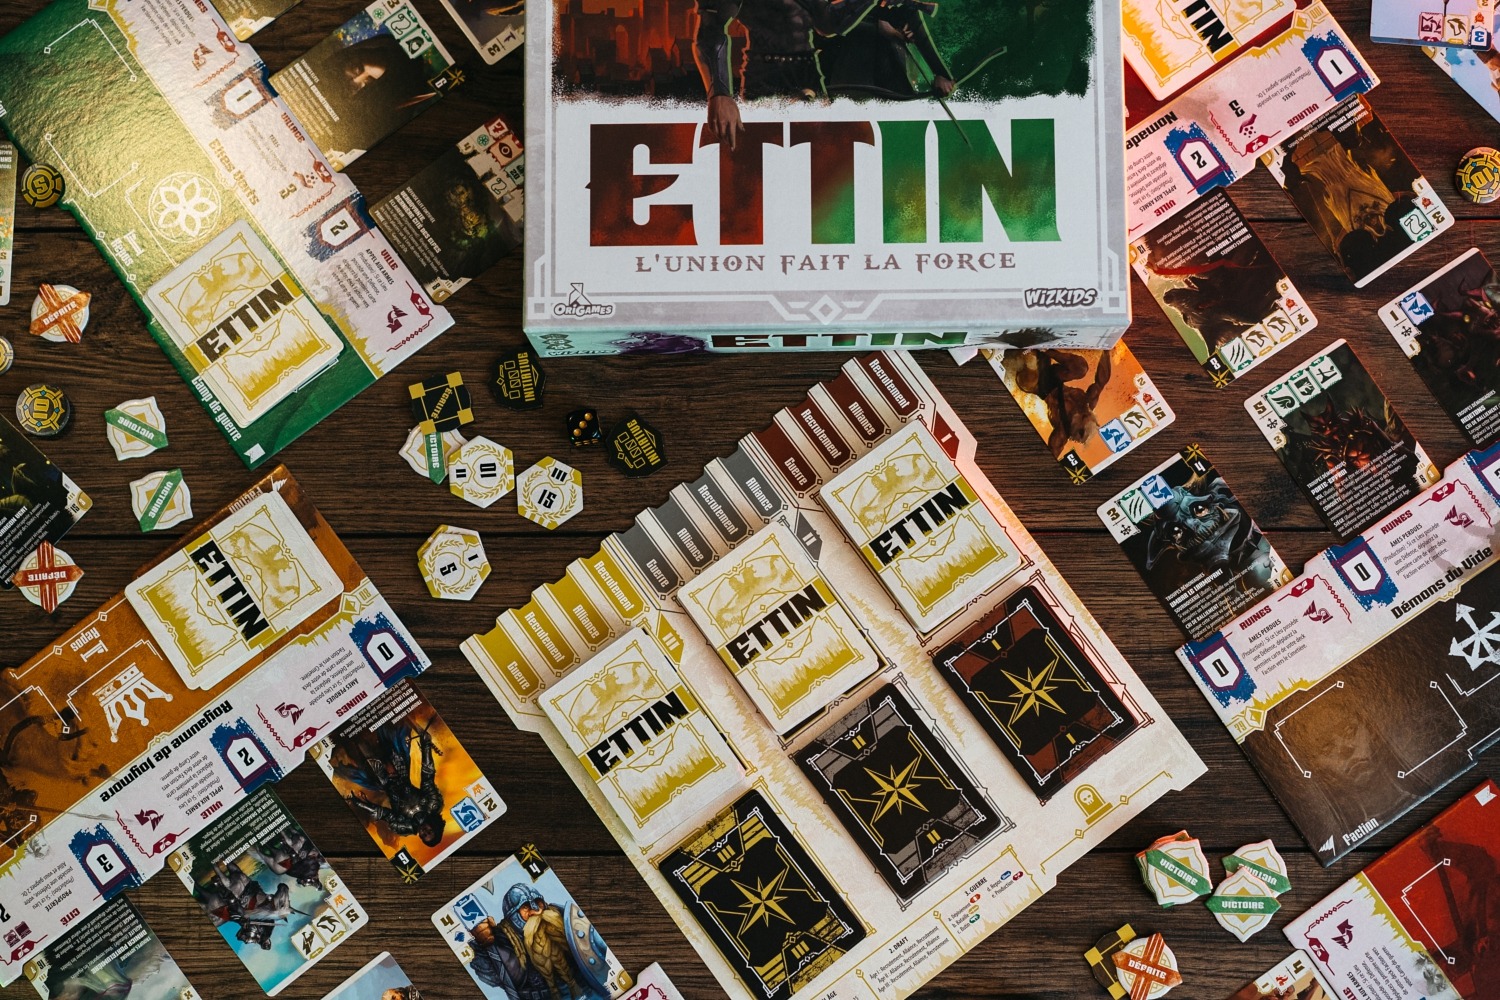 ETTIN : L'Union fait la Force origames wizigames boardgame jeu de société